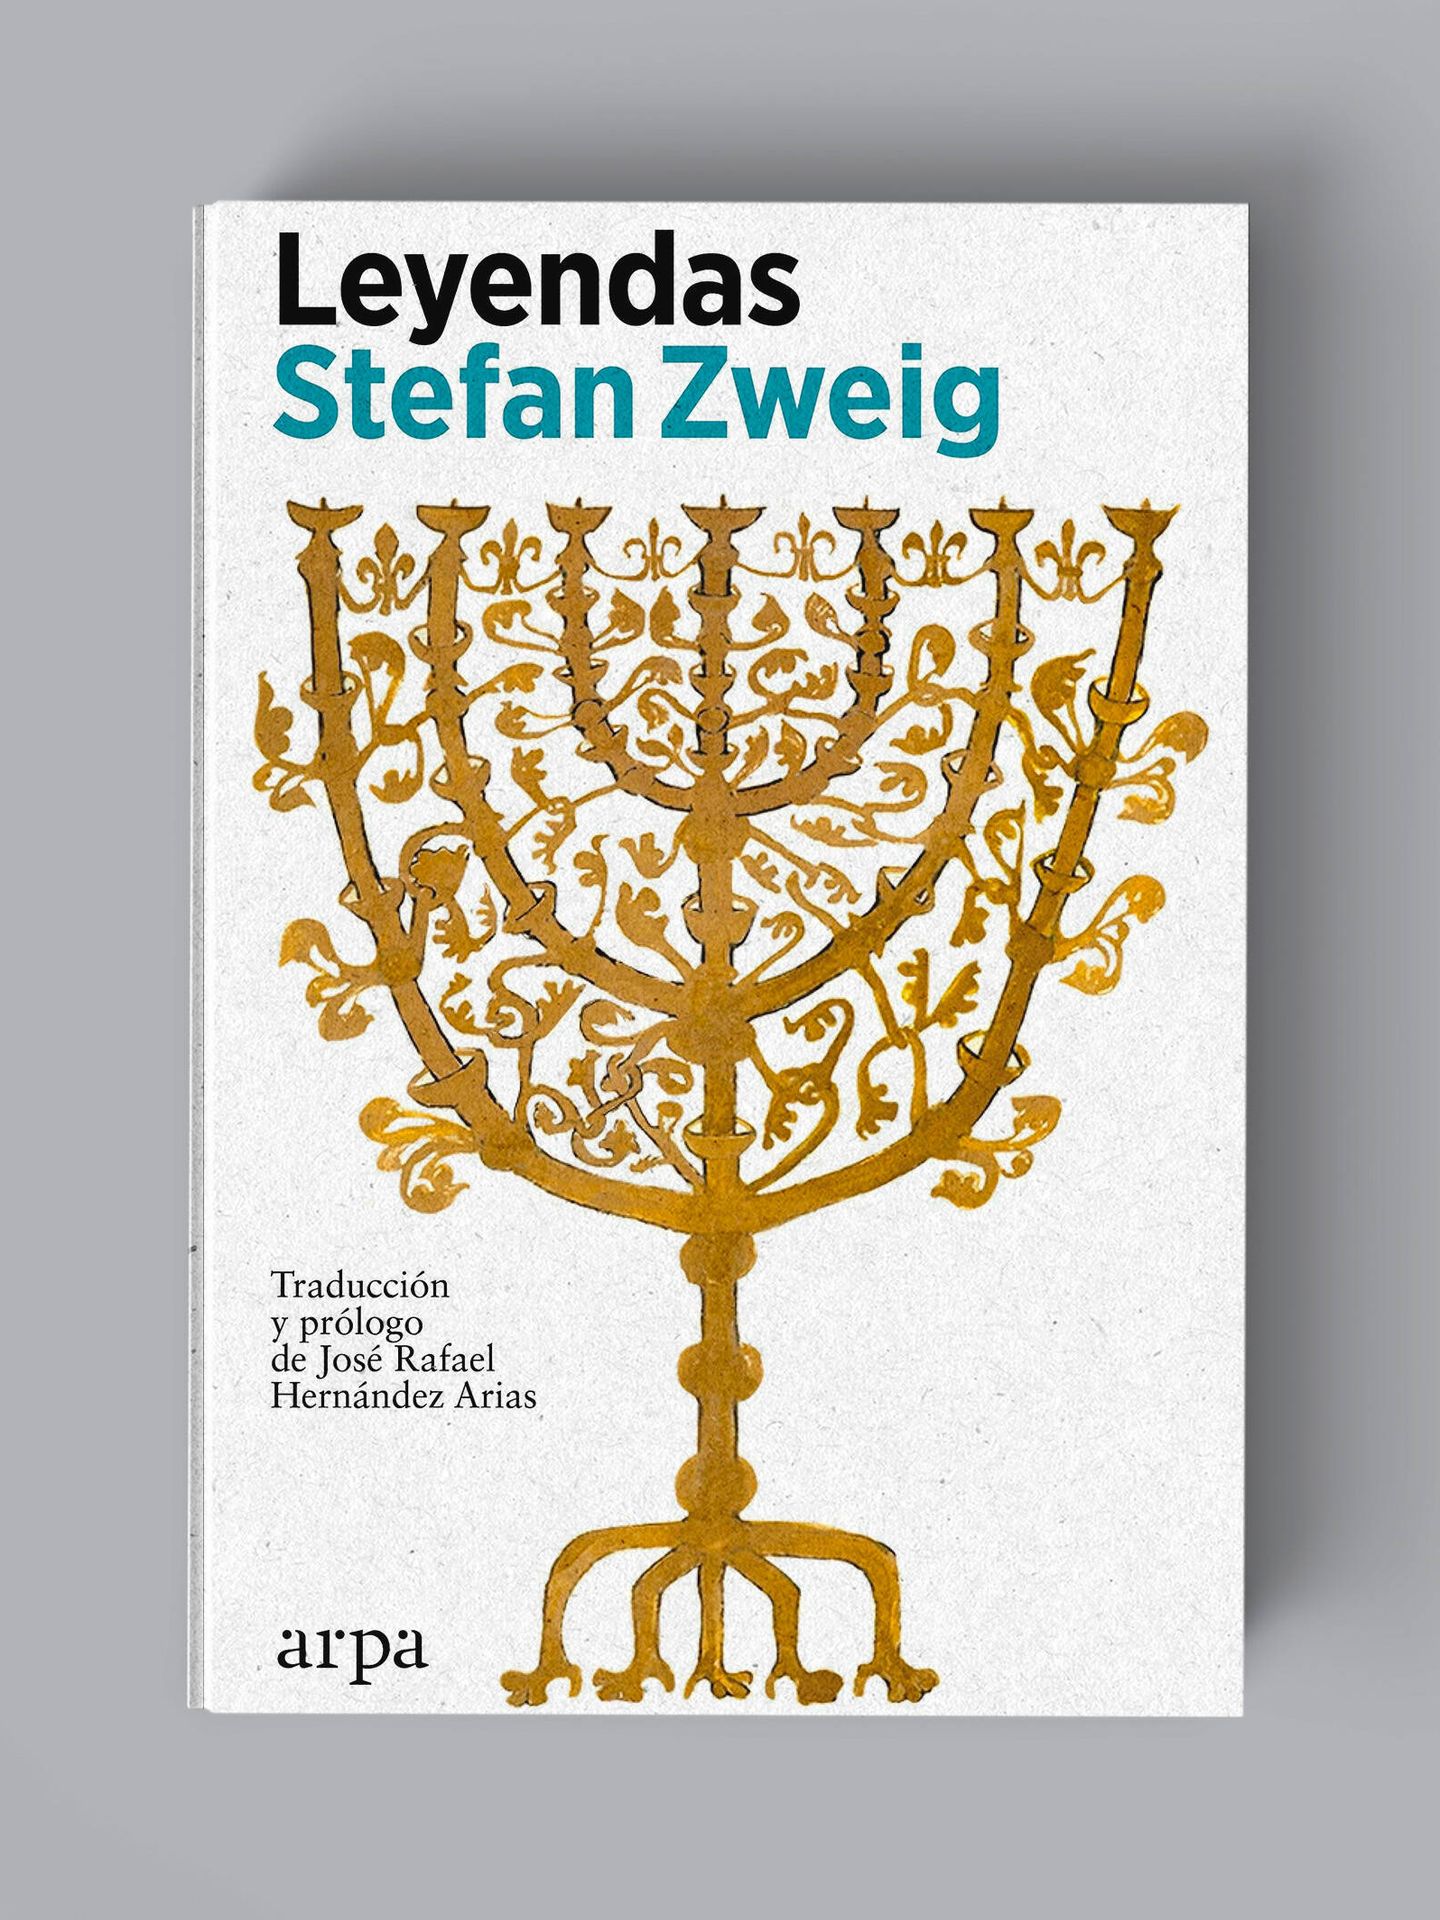 Portada de 'Leyendas', el volumen que recoge los cinco textos de ese género escritos por Stefan Zweig.